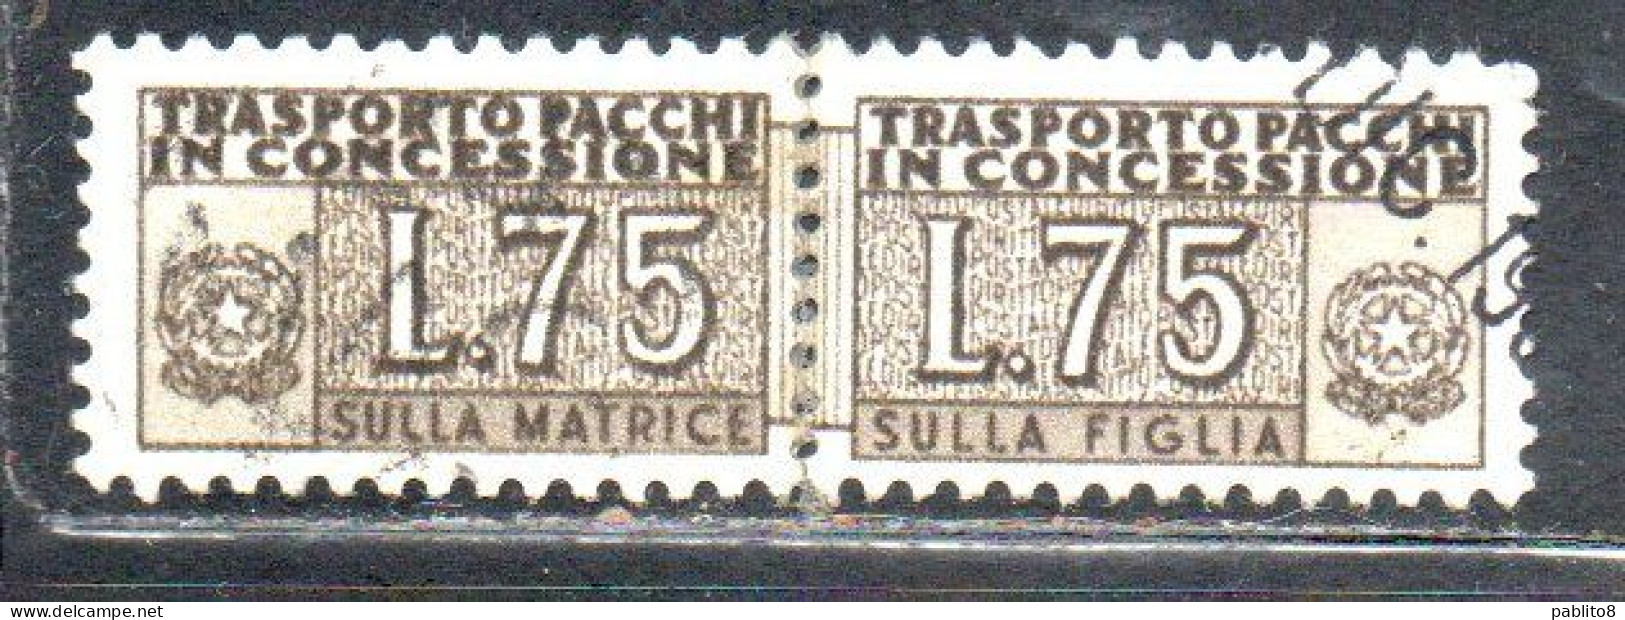 ITALIA REPUBBLICA ITALY REPUBLIC 1955 1981 PACCHI IN CONCESSIONE PARCEL POST STELLE STARS LIRE 75 USATO USED OBLIT - Consigned Parcels